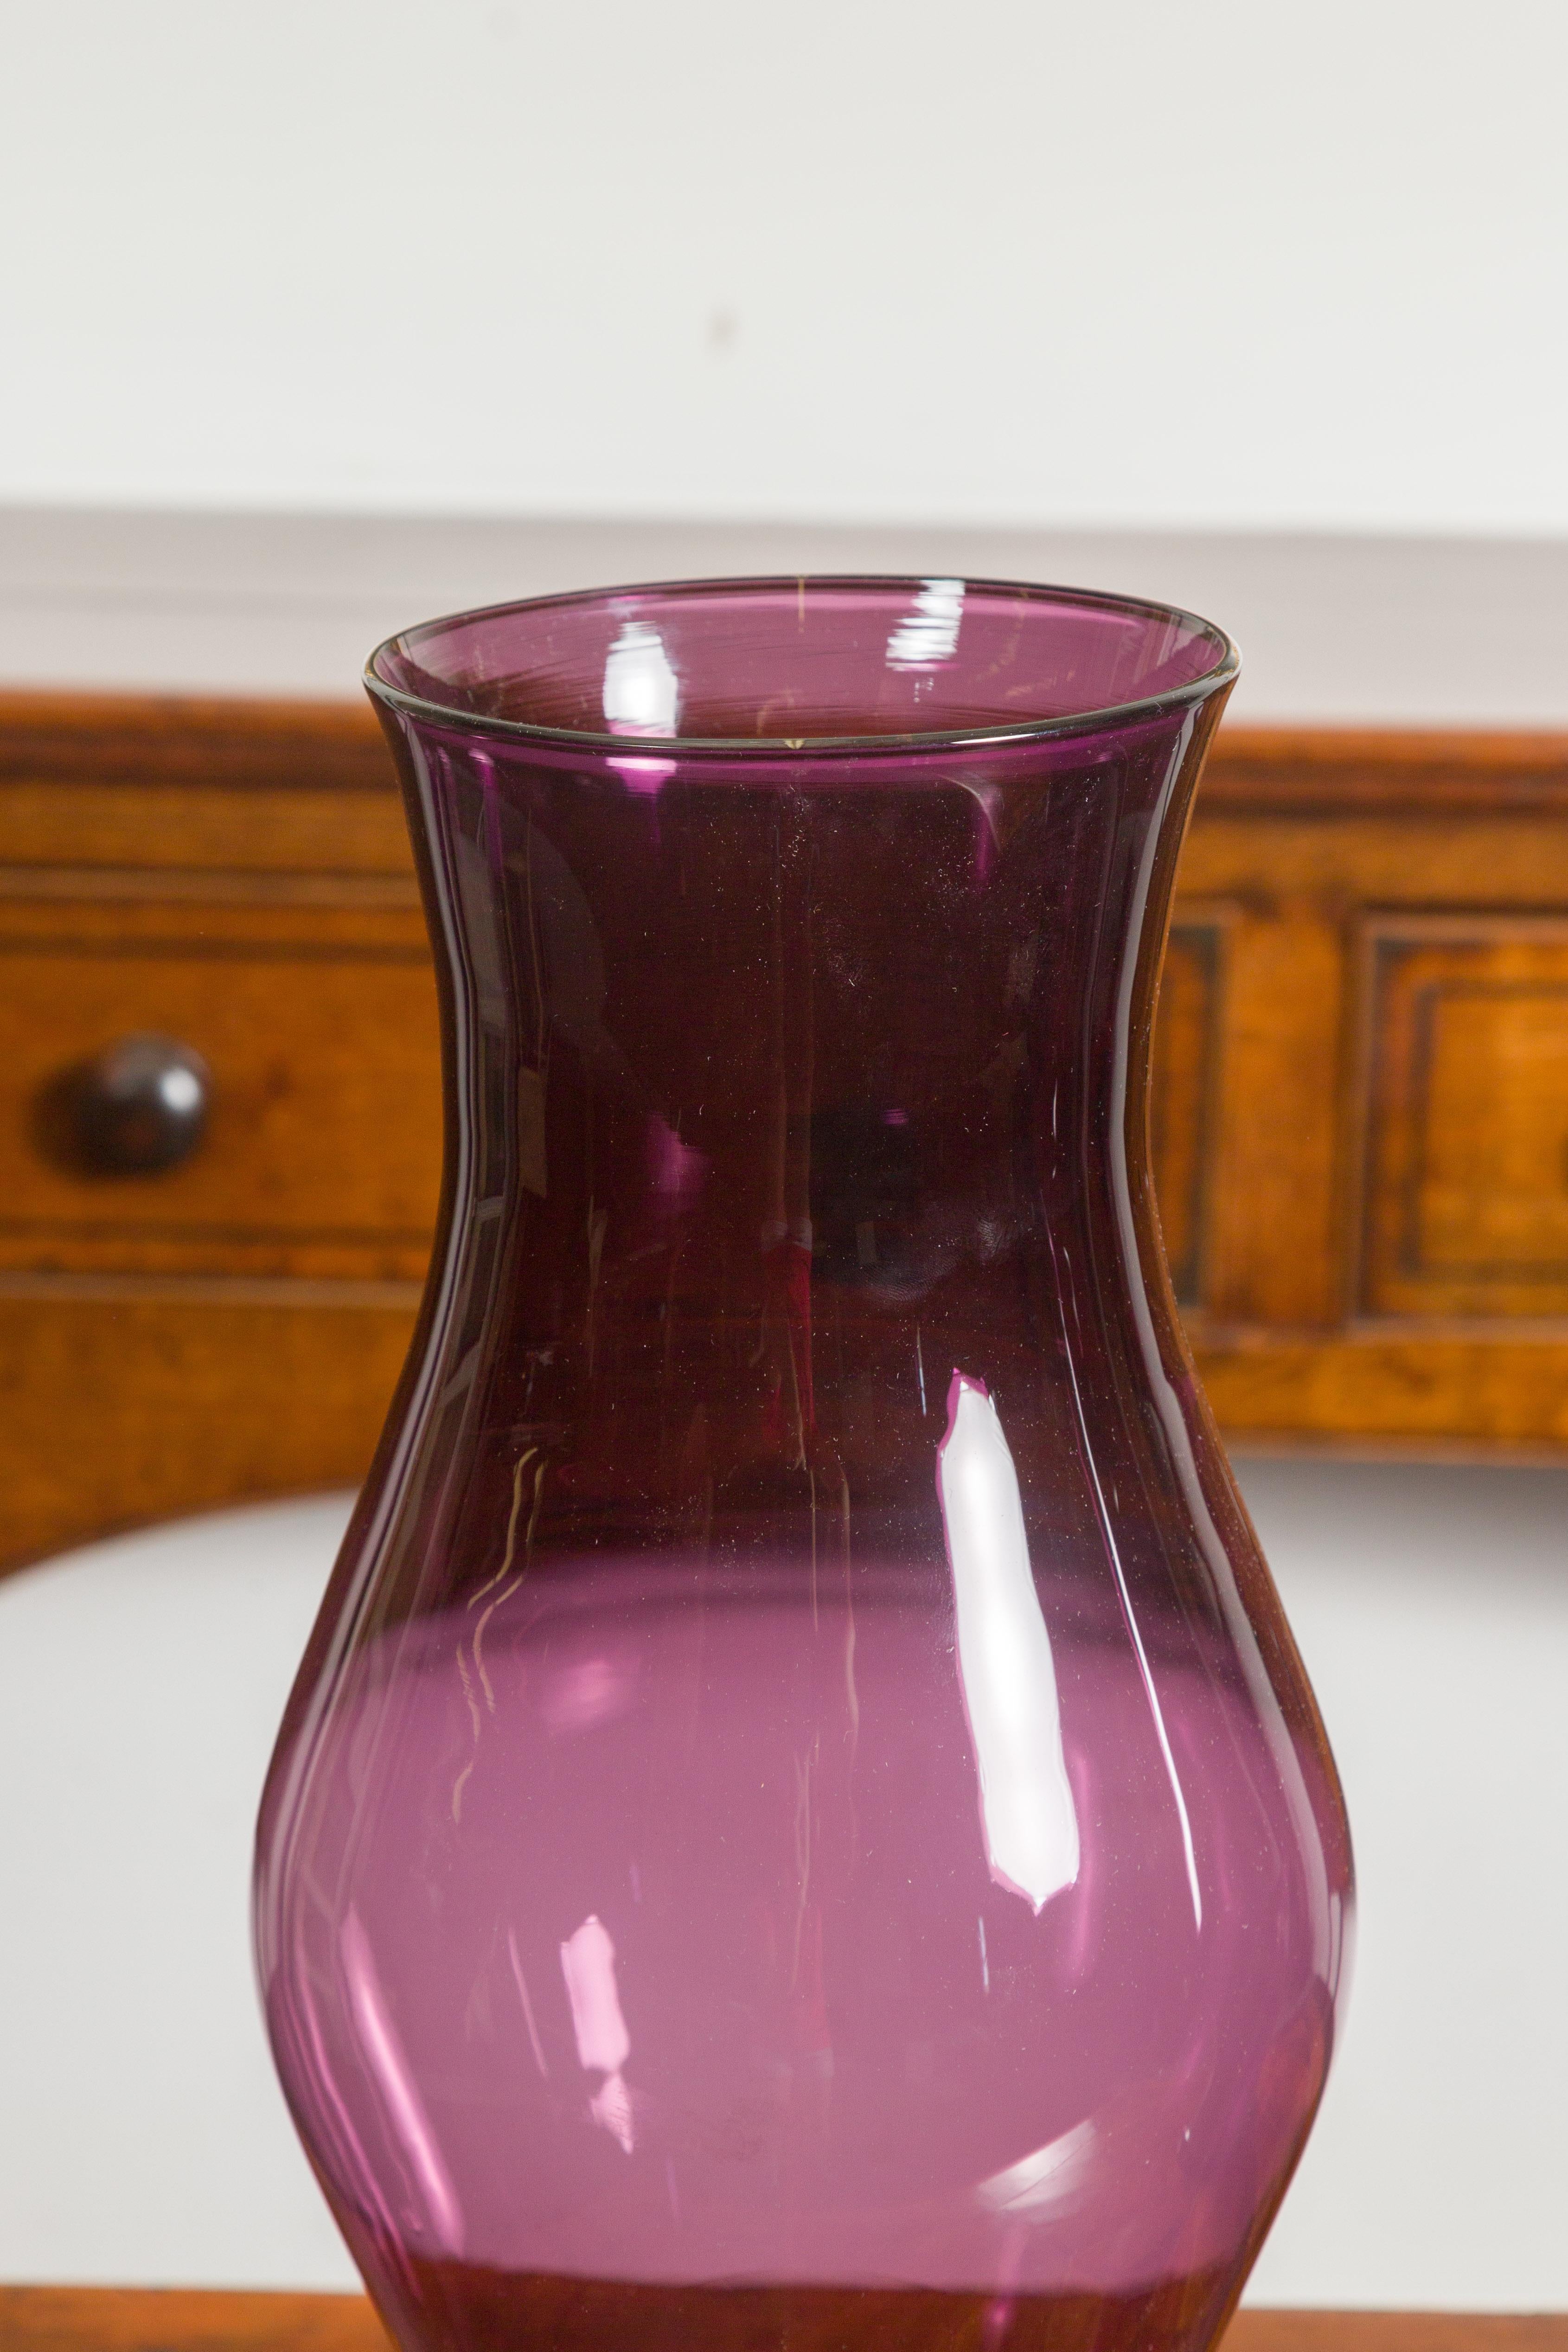 waterford crystal vase